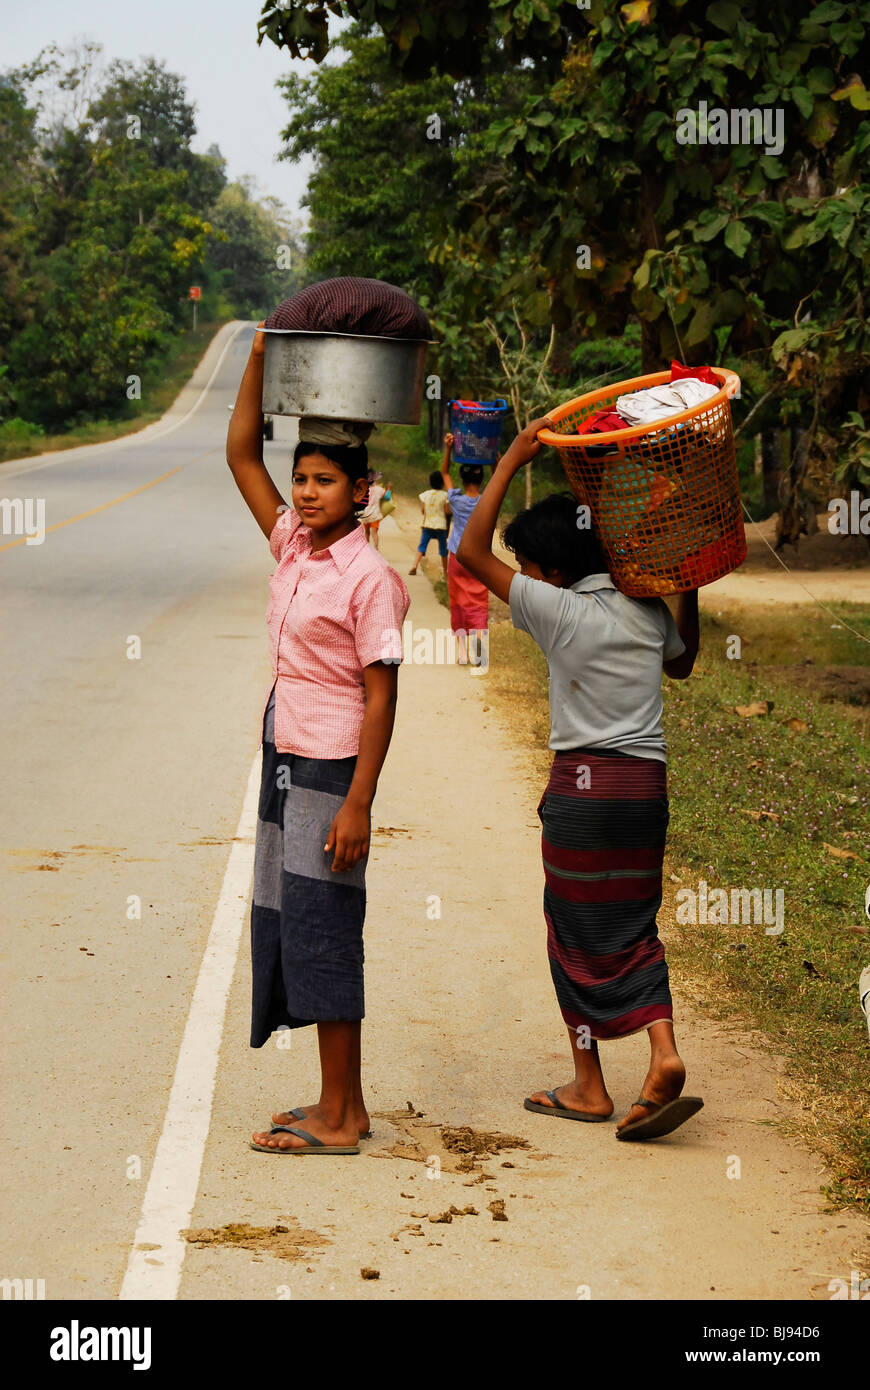 Karen Damen beim Überqueren der Straße mit ihrer Wäsche, Mae la Flüchtlingslager (thai-burmesischen Grenze), nördlich von Mae Sot, thailand Stockfoto